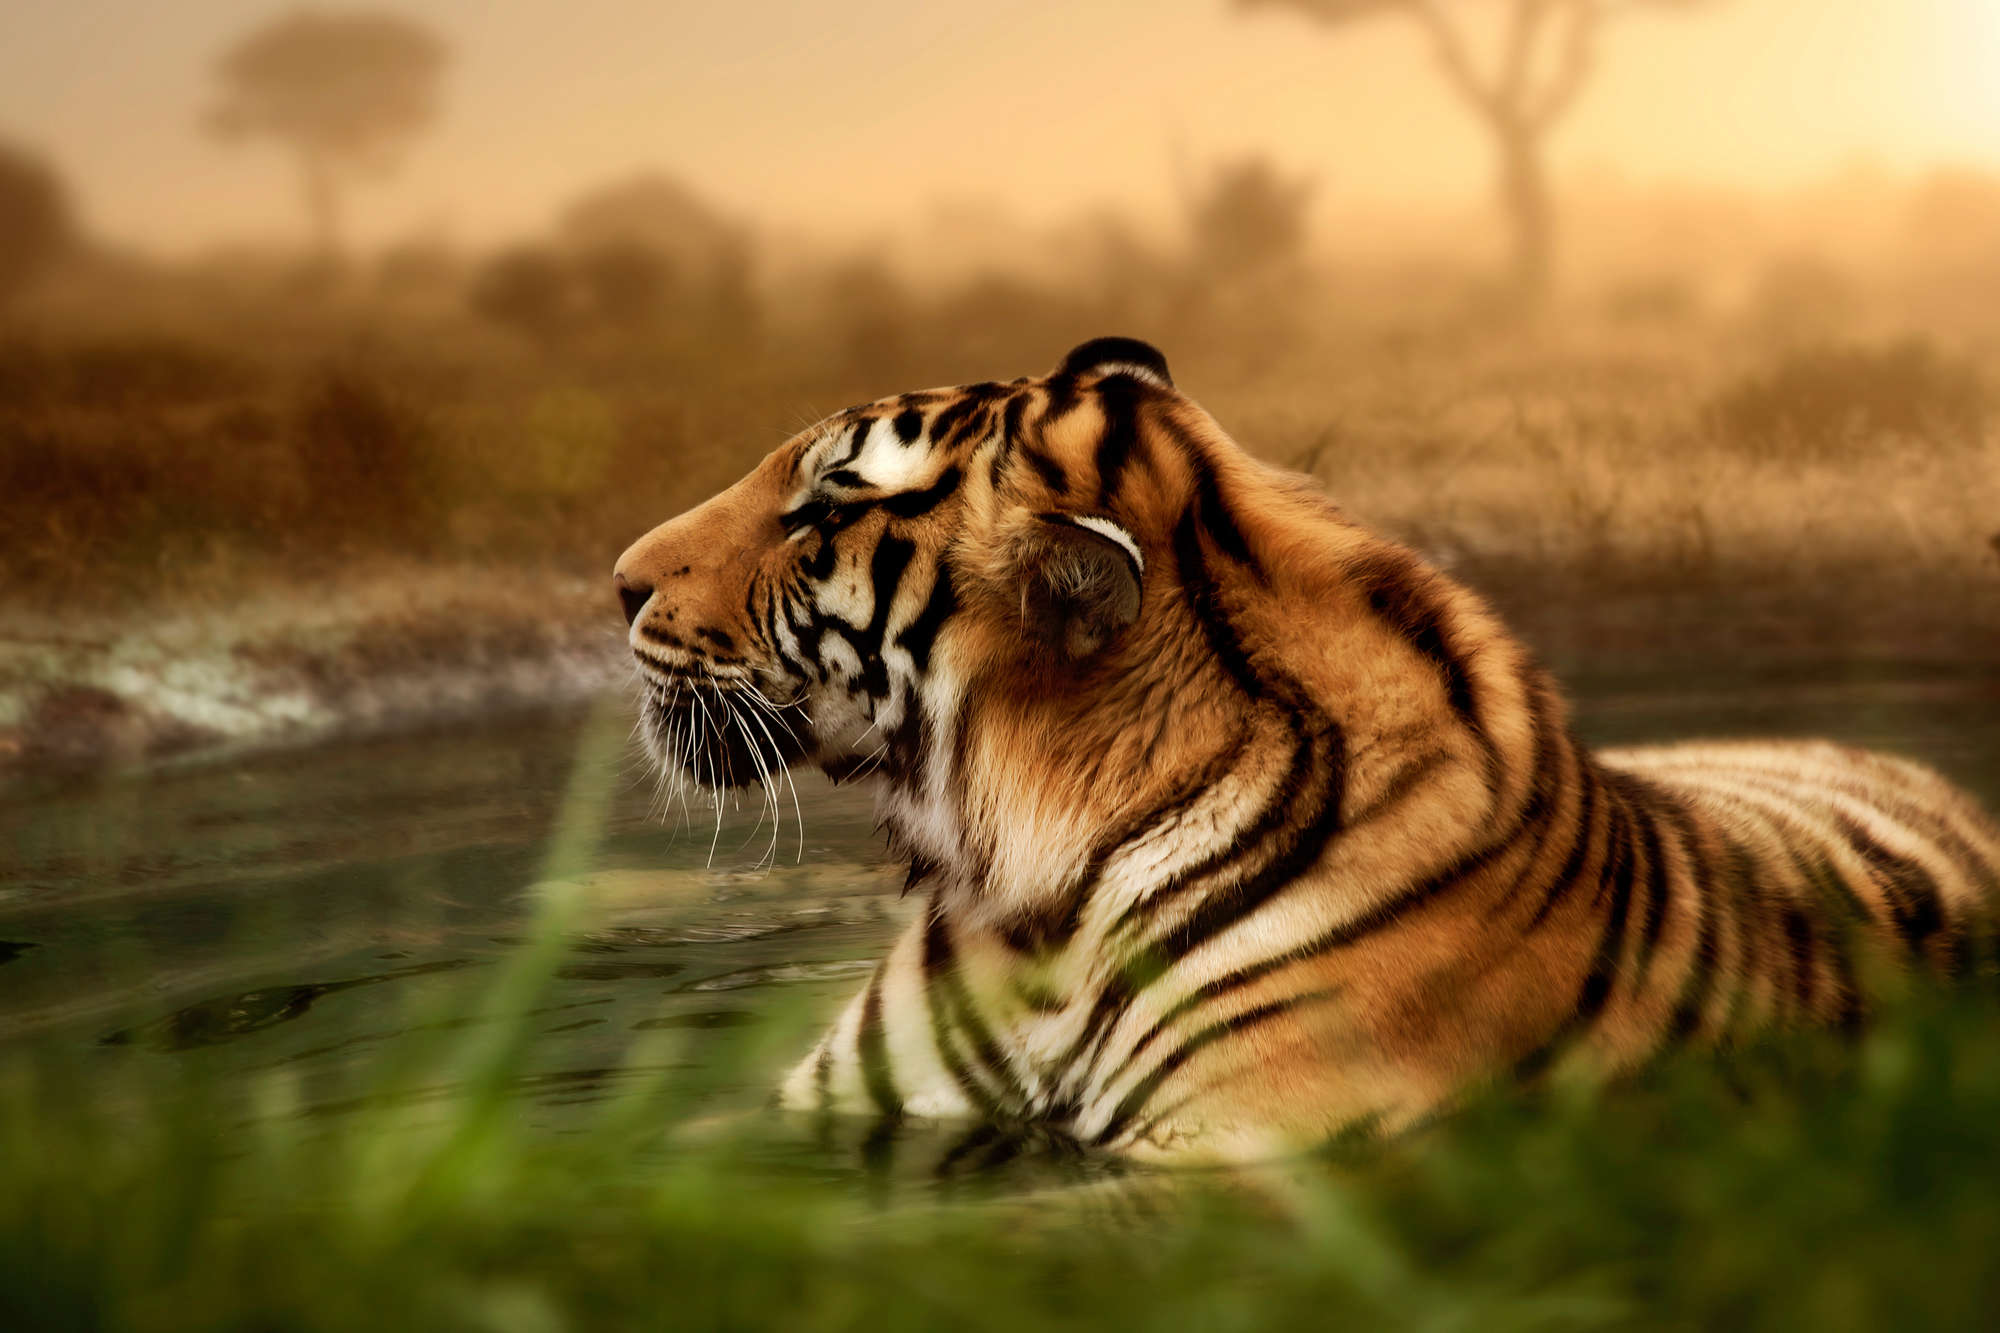             Tiger Fototapete in freier Wildbahn auf Premium Glattvlies
        